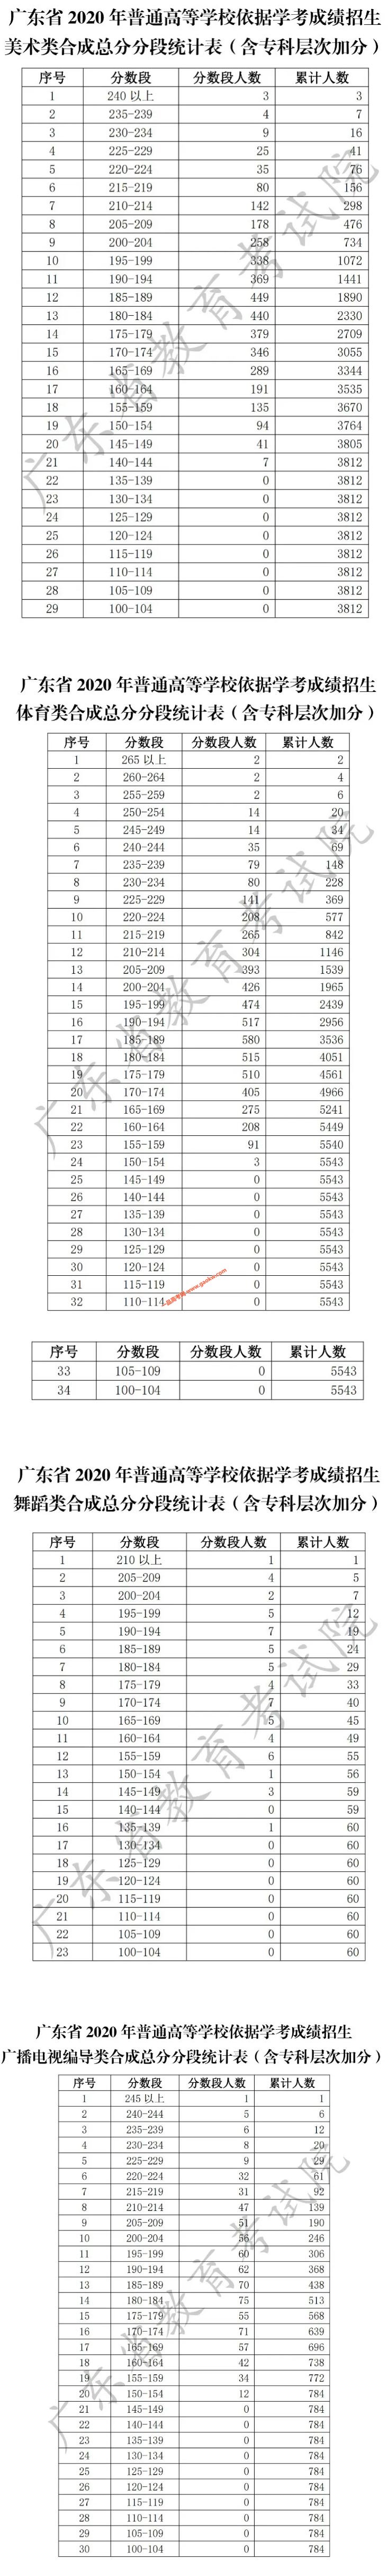 广东2020年春季高考分数段数据公布（五分段成绩排名）2